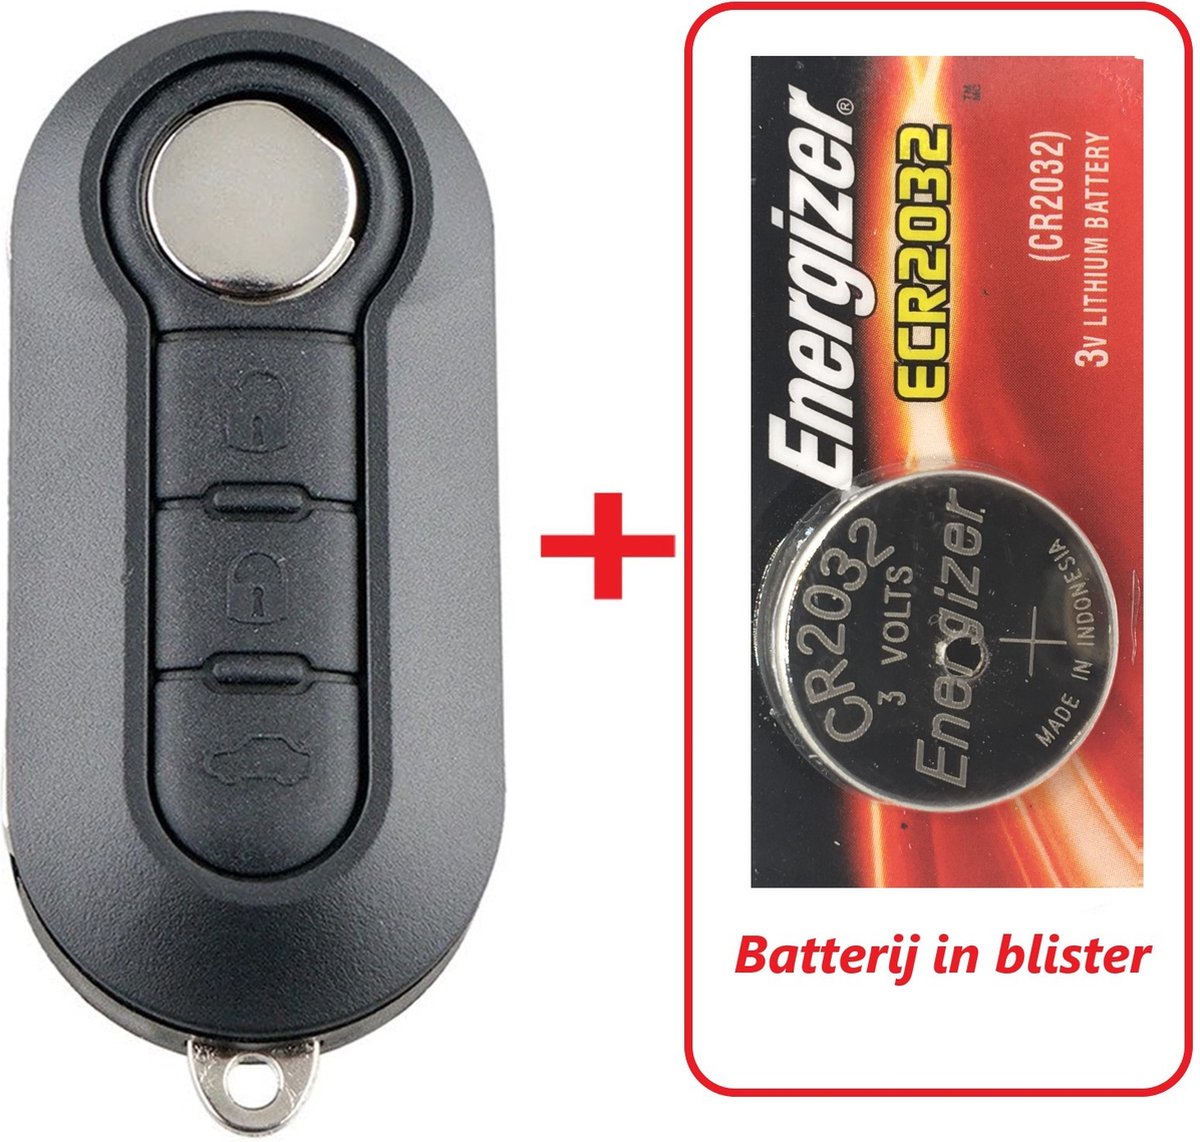 Clé de voiture 3 boutons boîtier de clé à rabat avec batterie Maxell CR2032  adapté